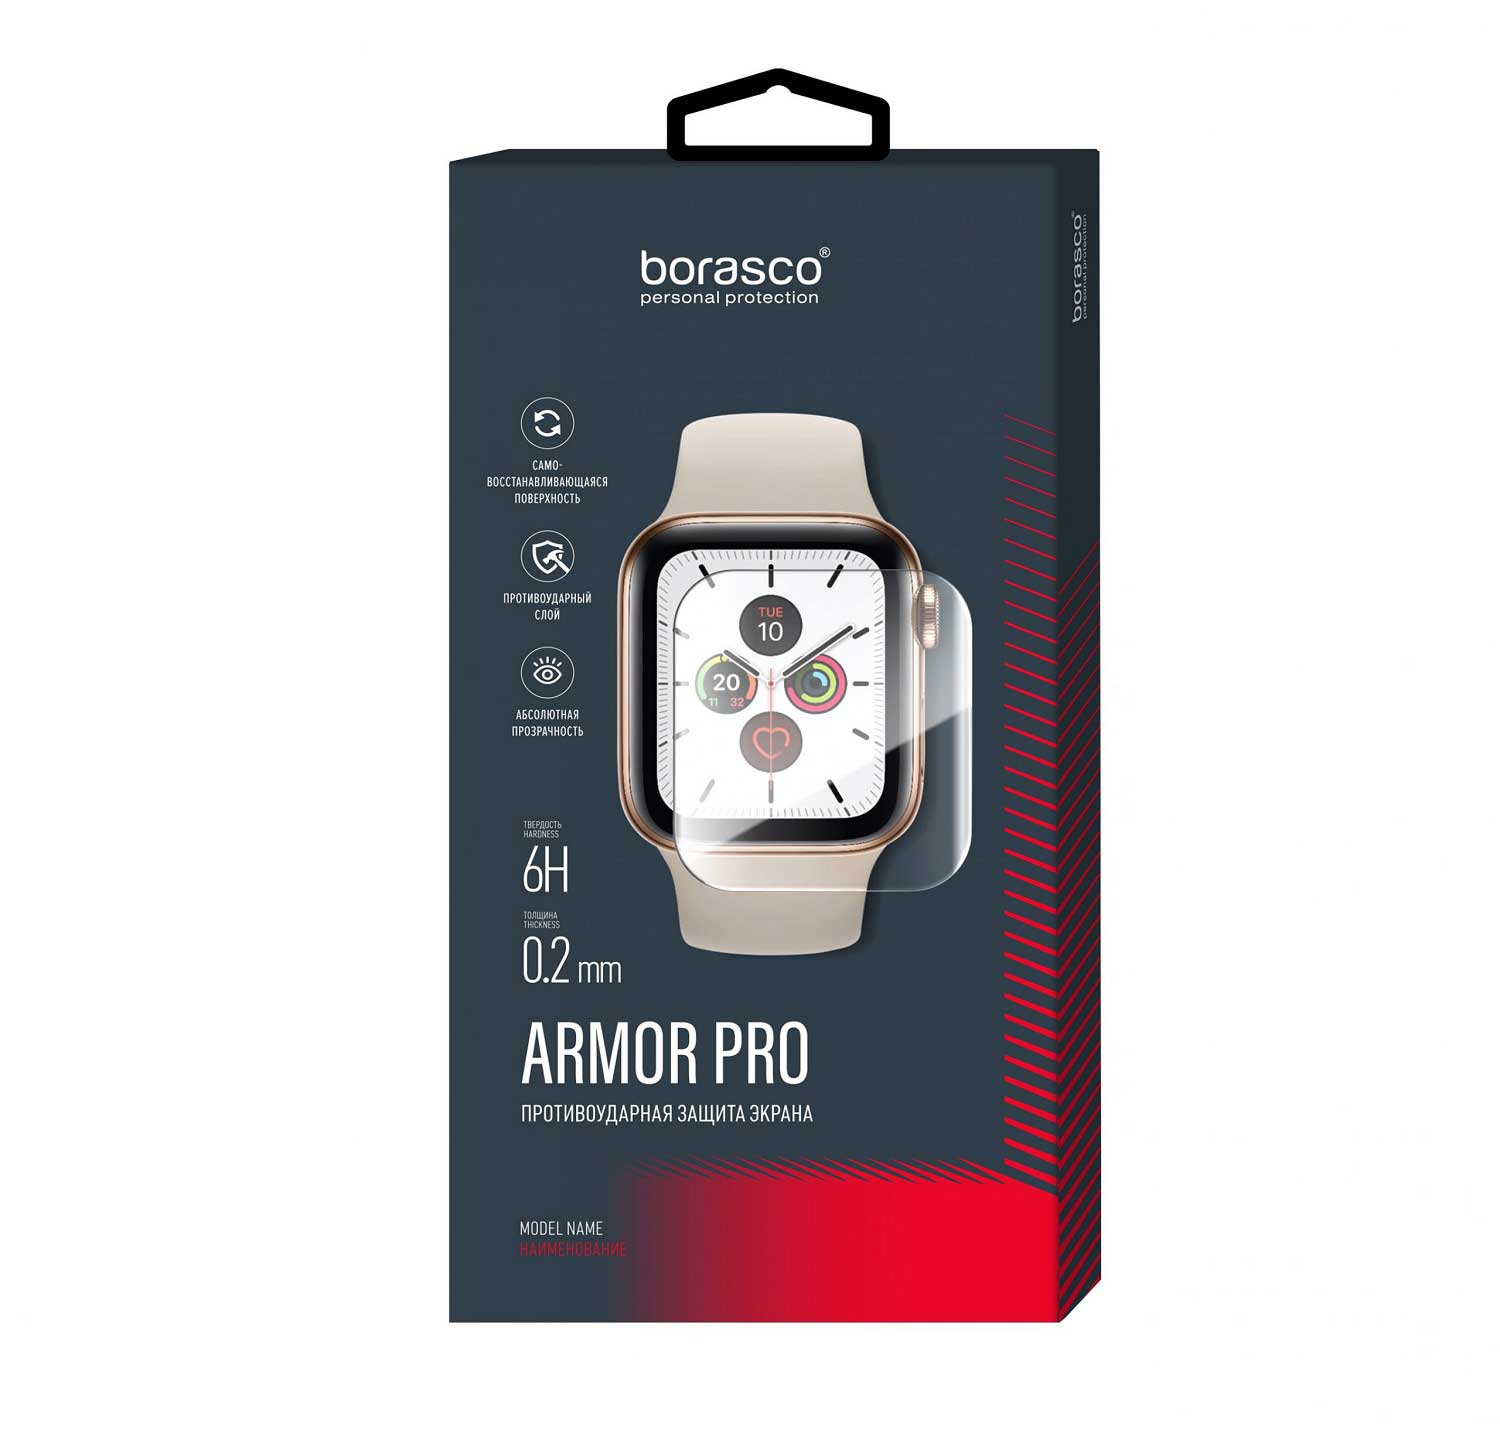 Защита экрана BoraSCO Armor Pro для Xiaomi Mi Band 3 матовый защита экрана borasco armor pro для honor band 6 матовый